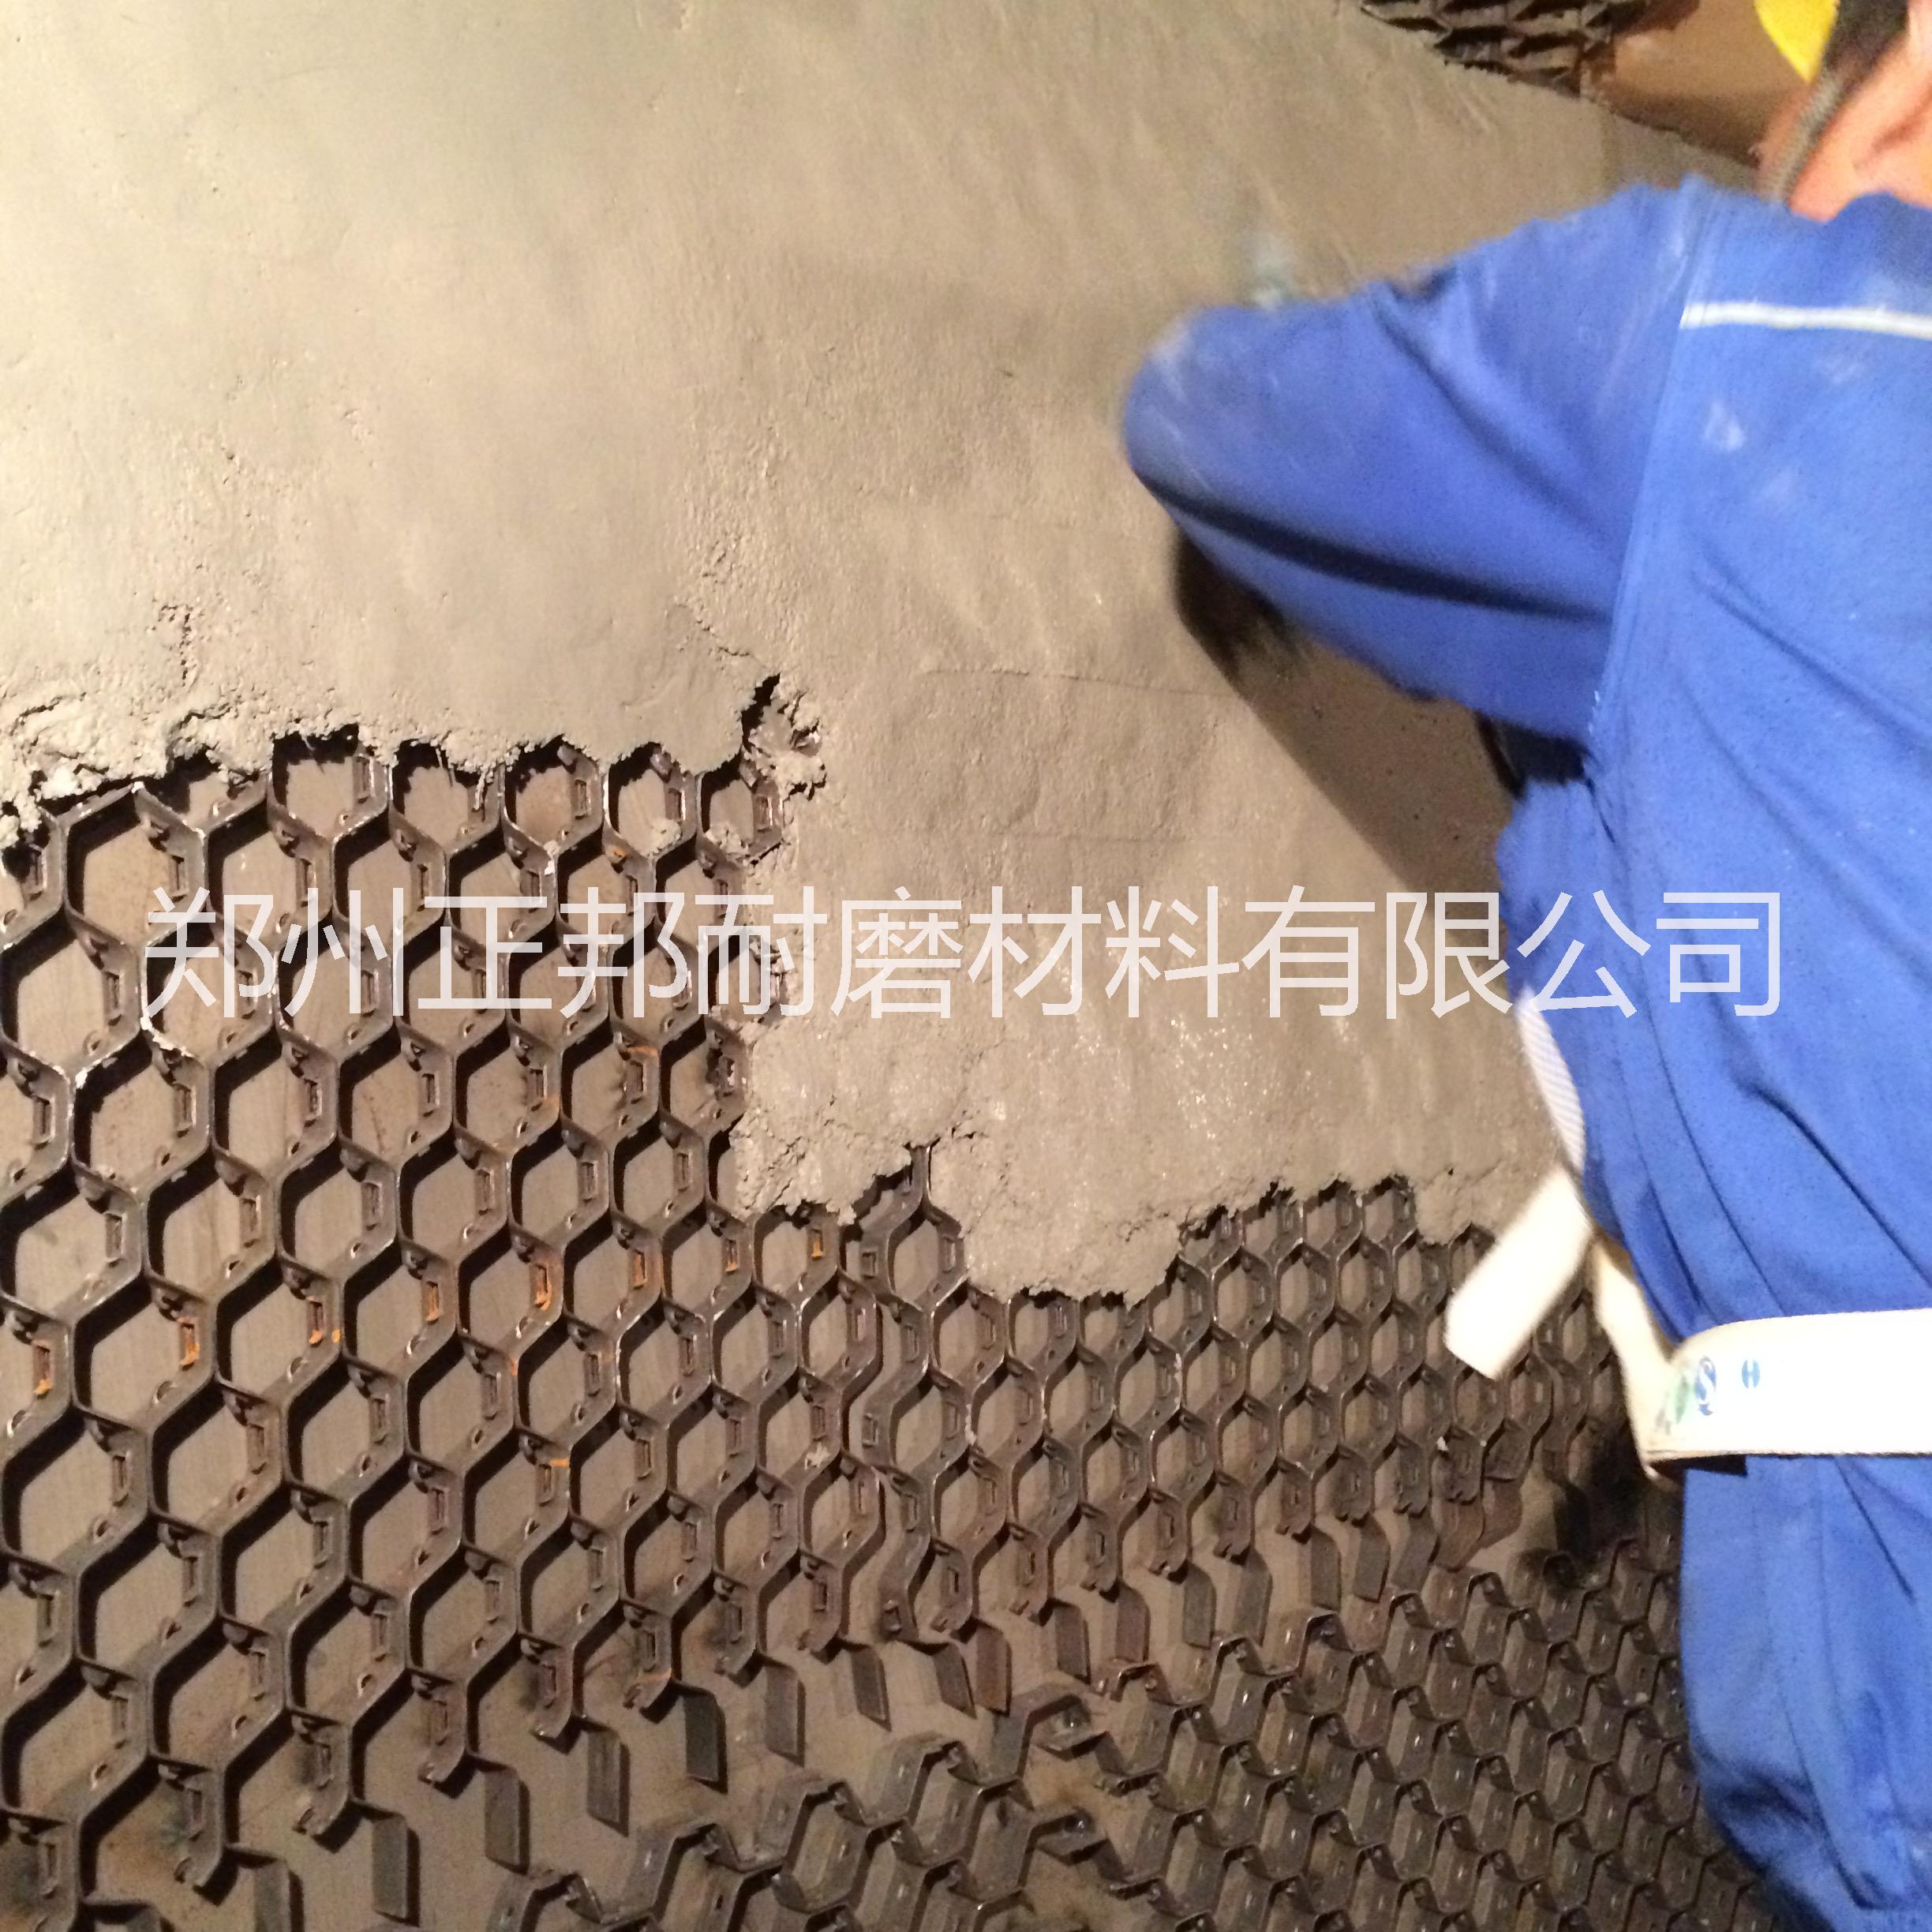 龟甲网耐磨涂料 龟甲网耐磨胶泥